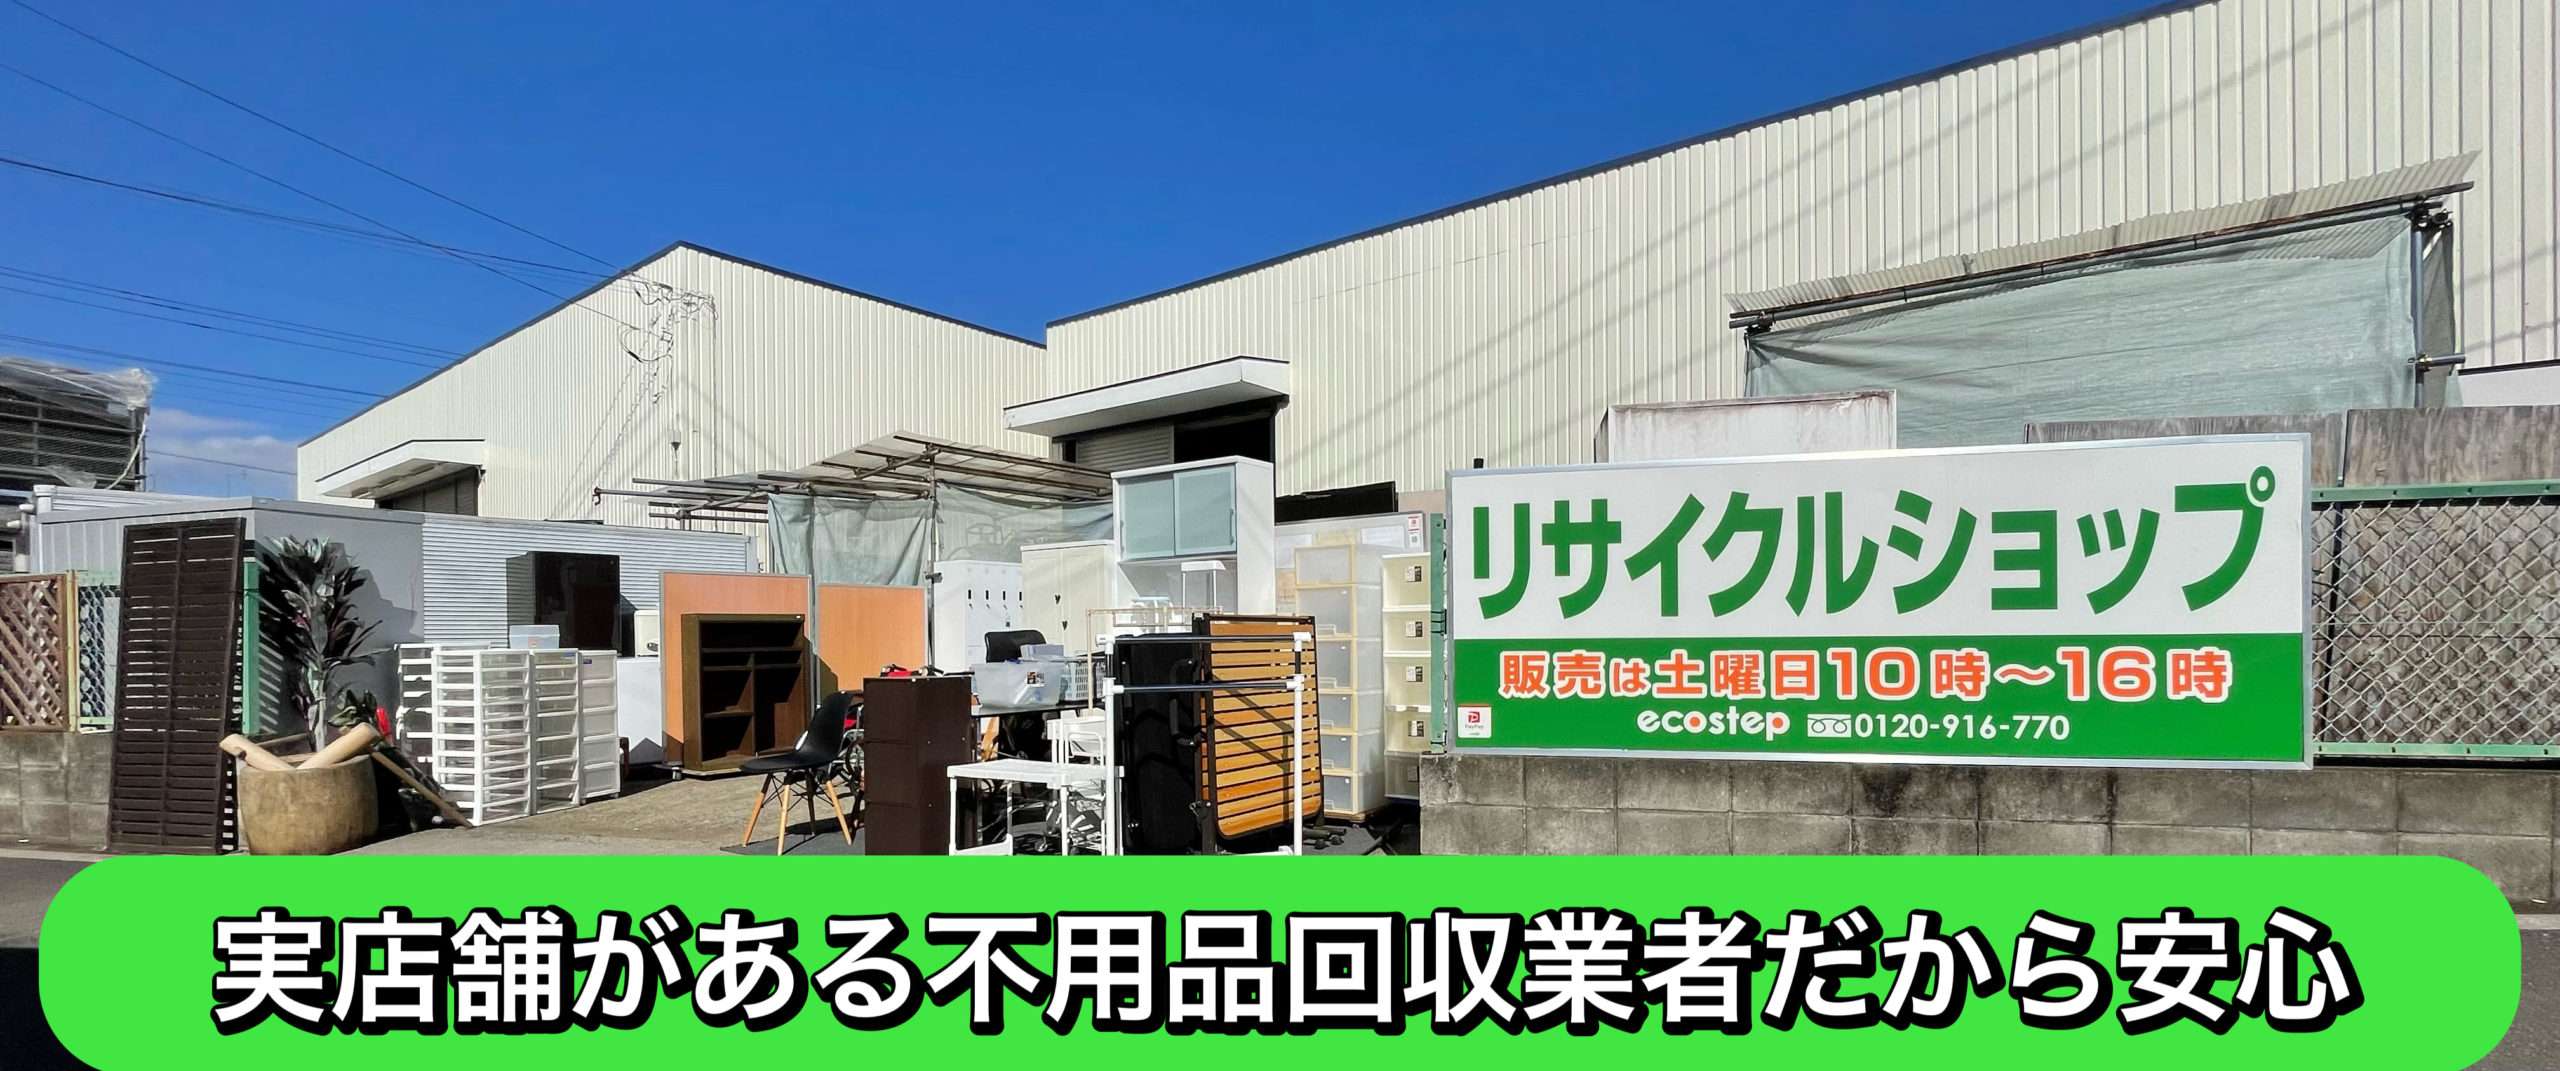 埼玉県の不用品買取・回収はエコステップ